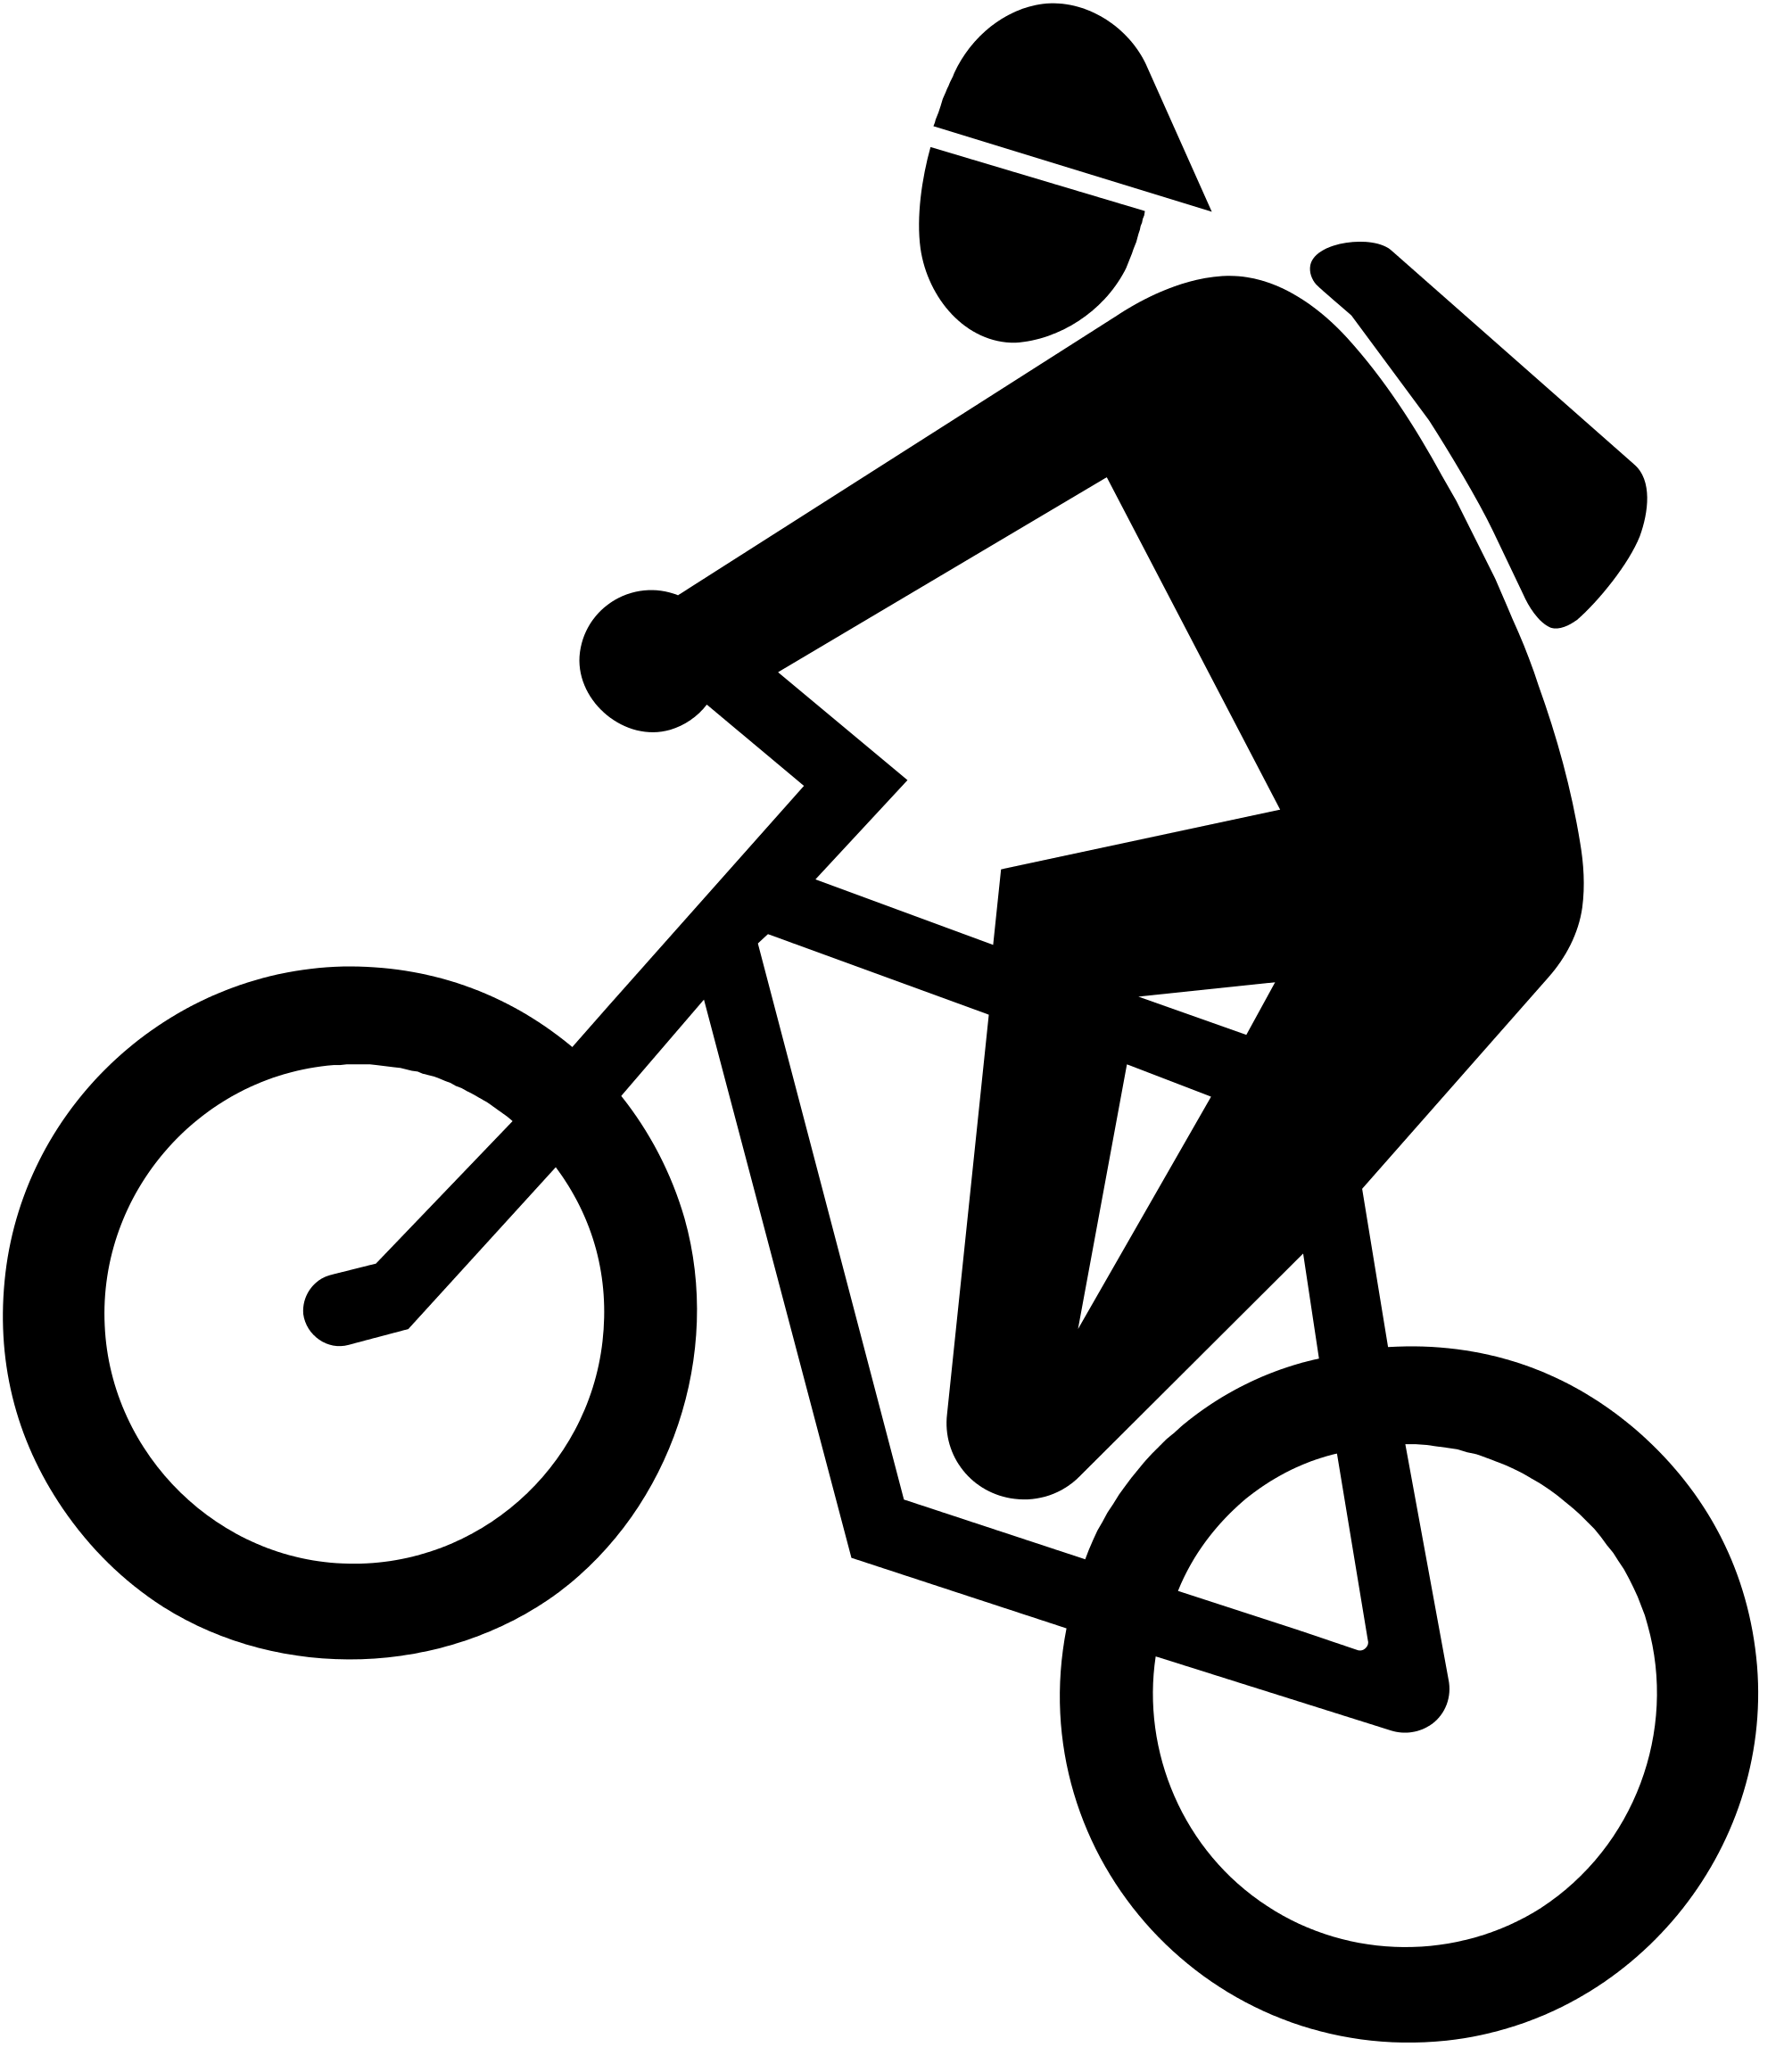 Người đi xe đạp